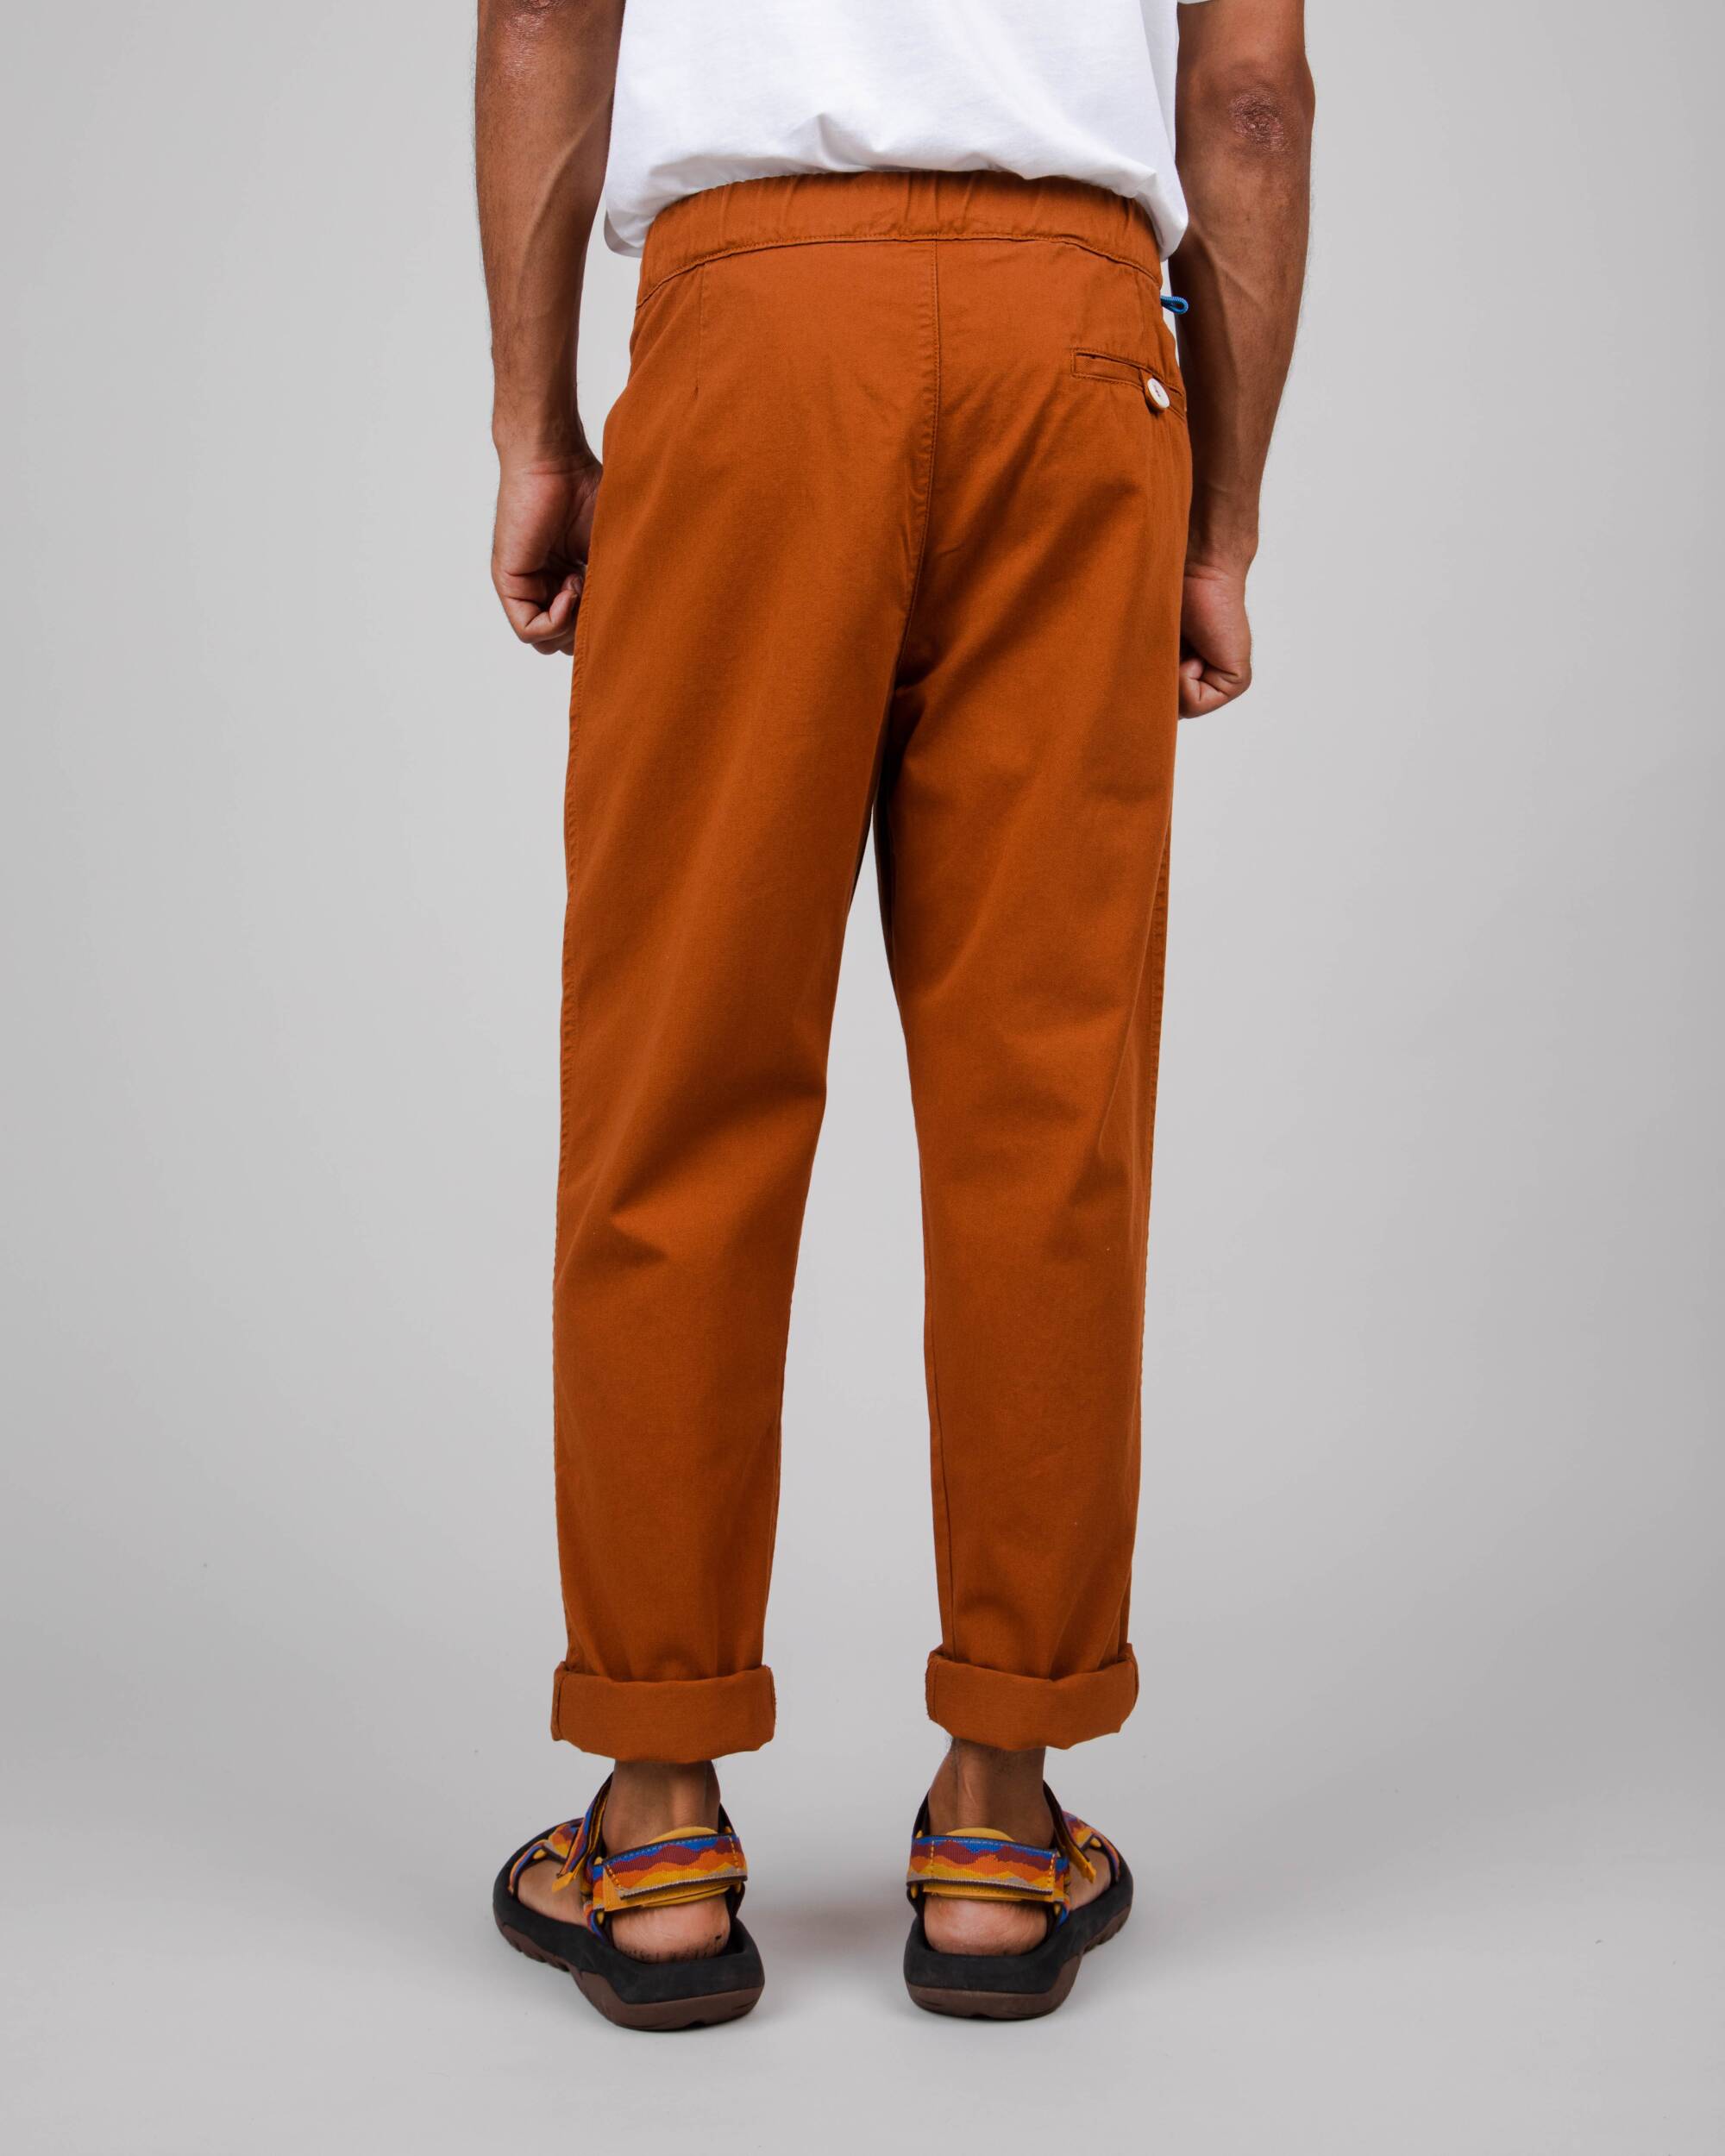 Dark orange Comfort chino trousers made of organic cotton from Brava Fabrics